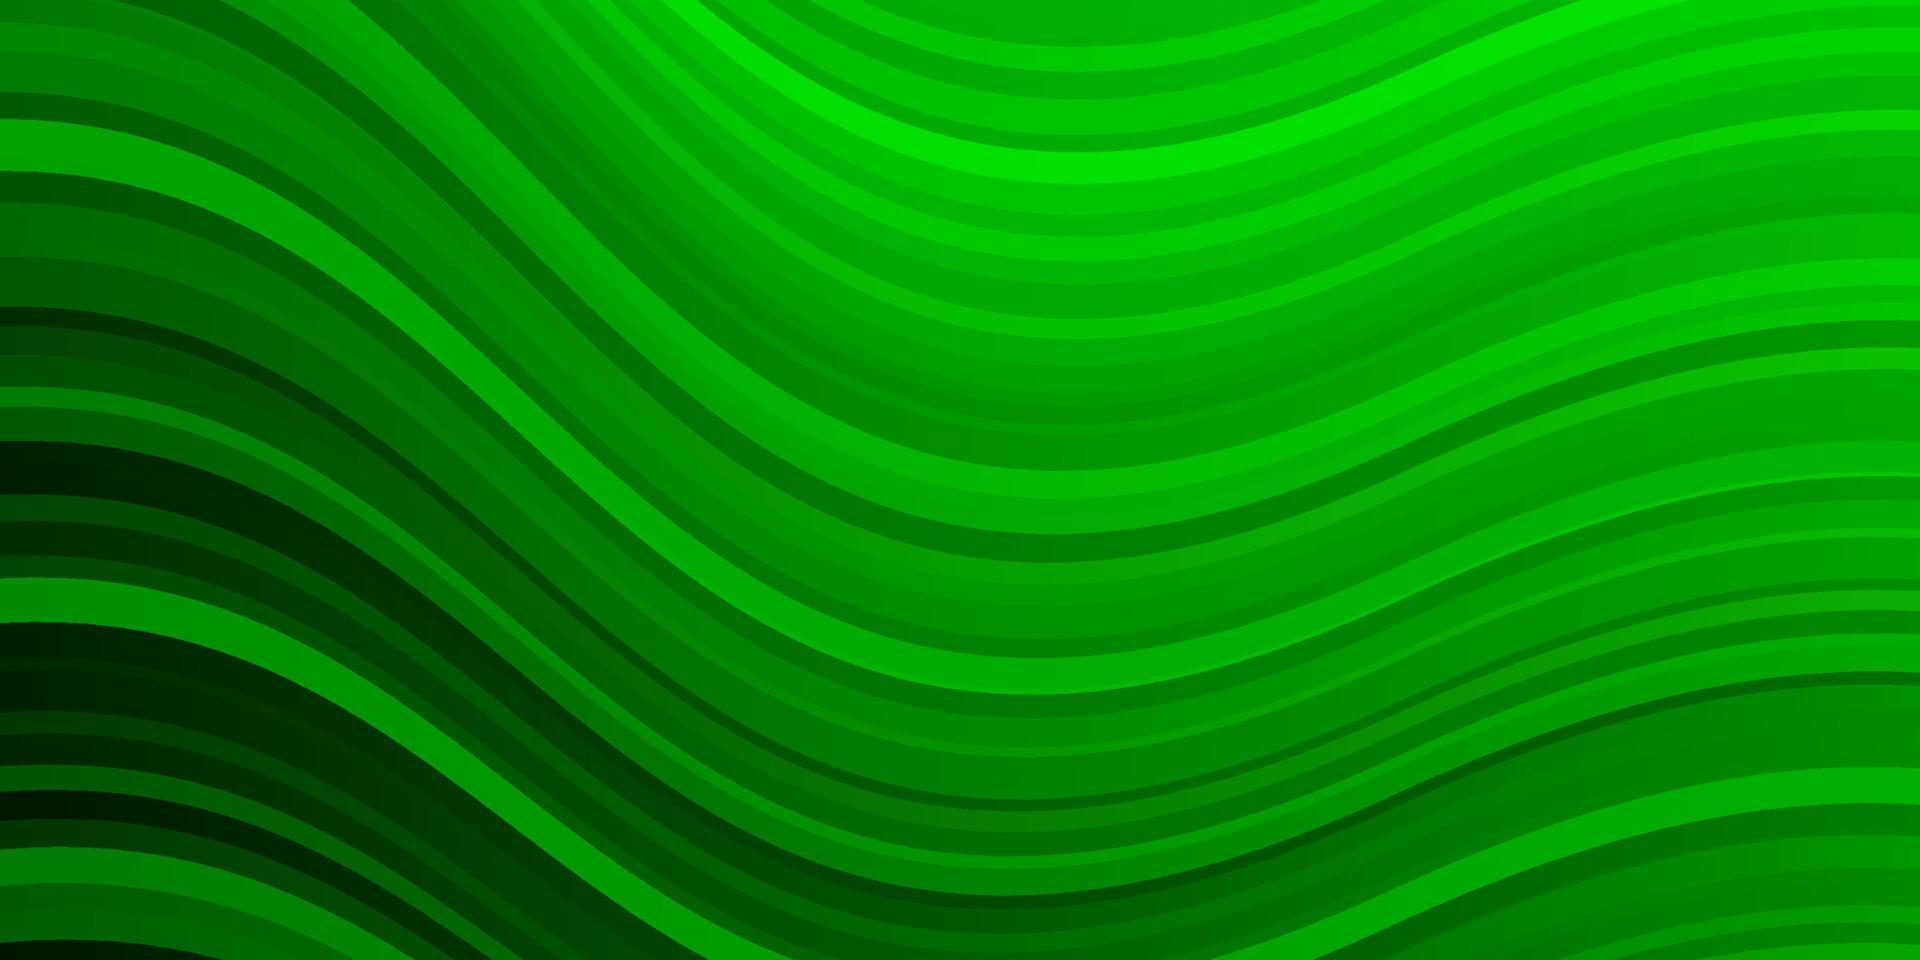 padrão de vetor verde claro com curvas.